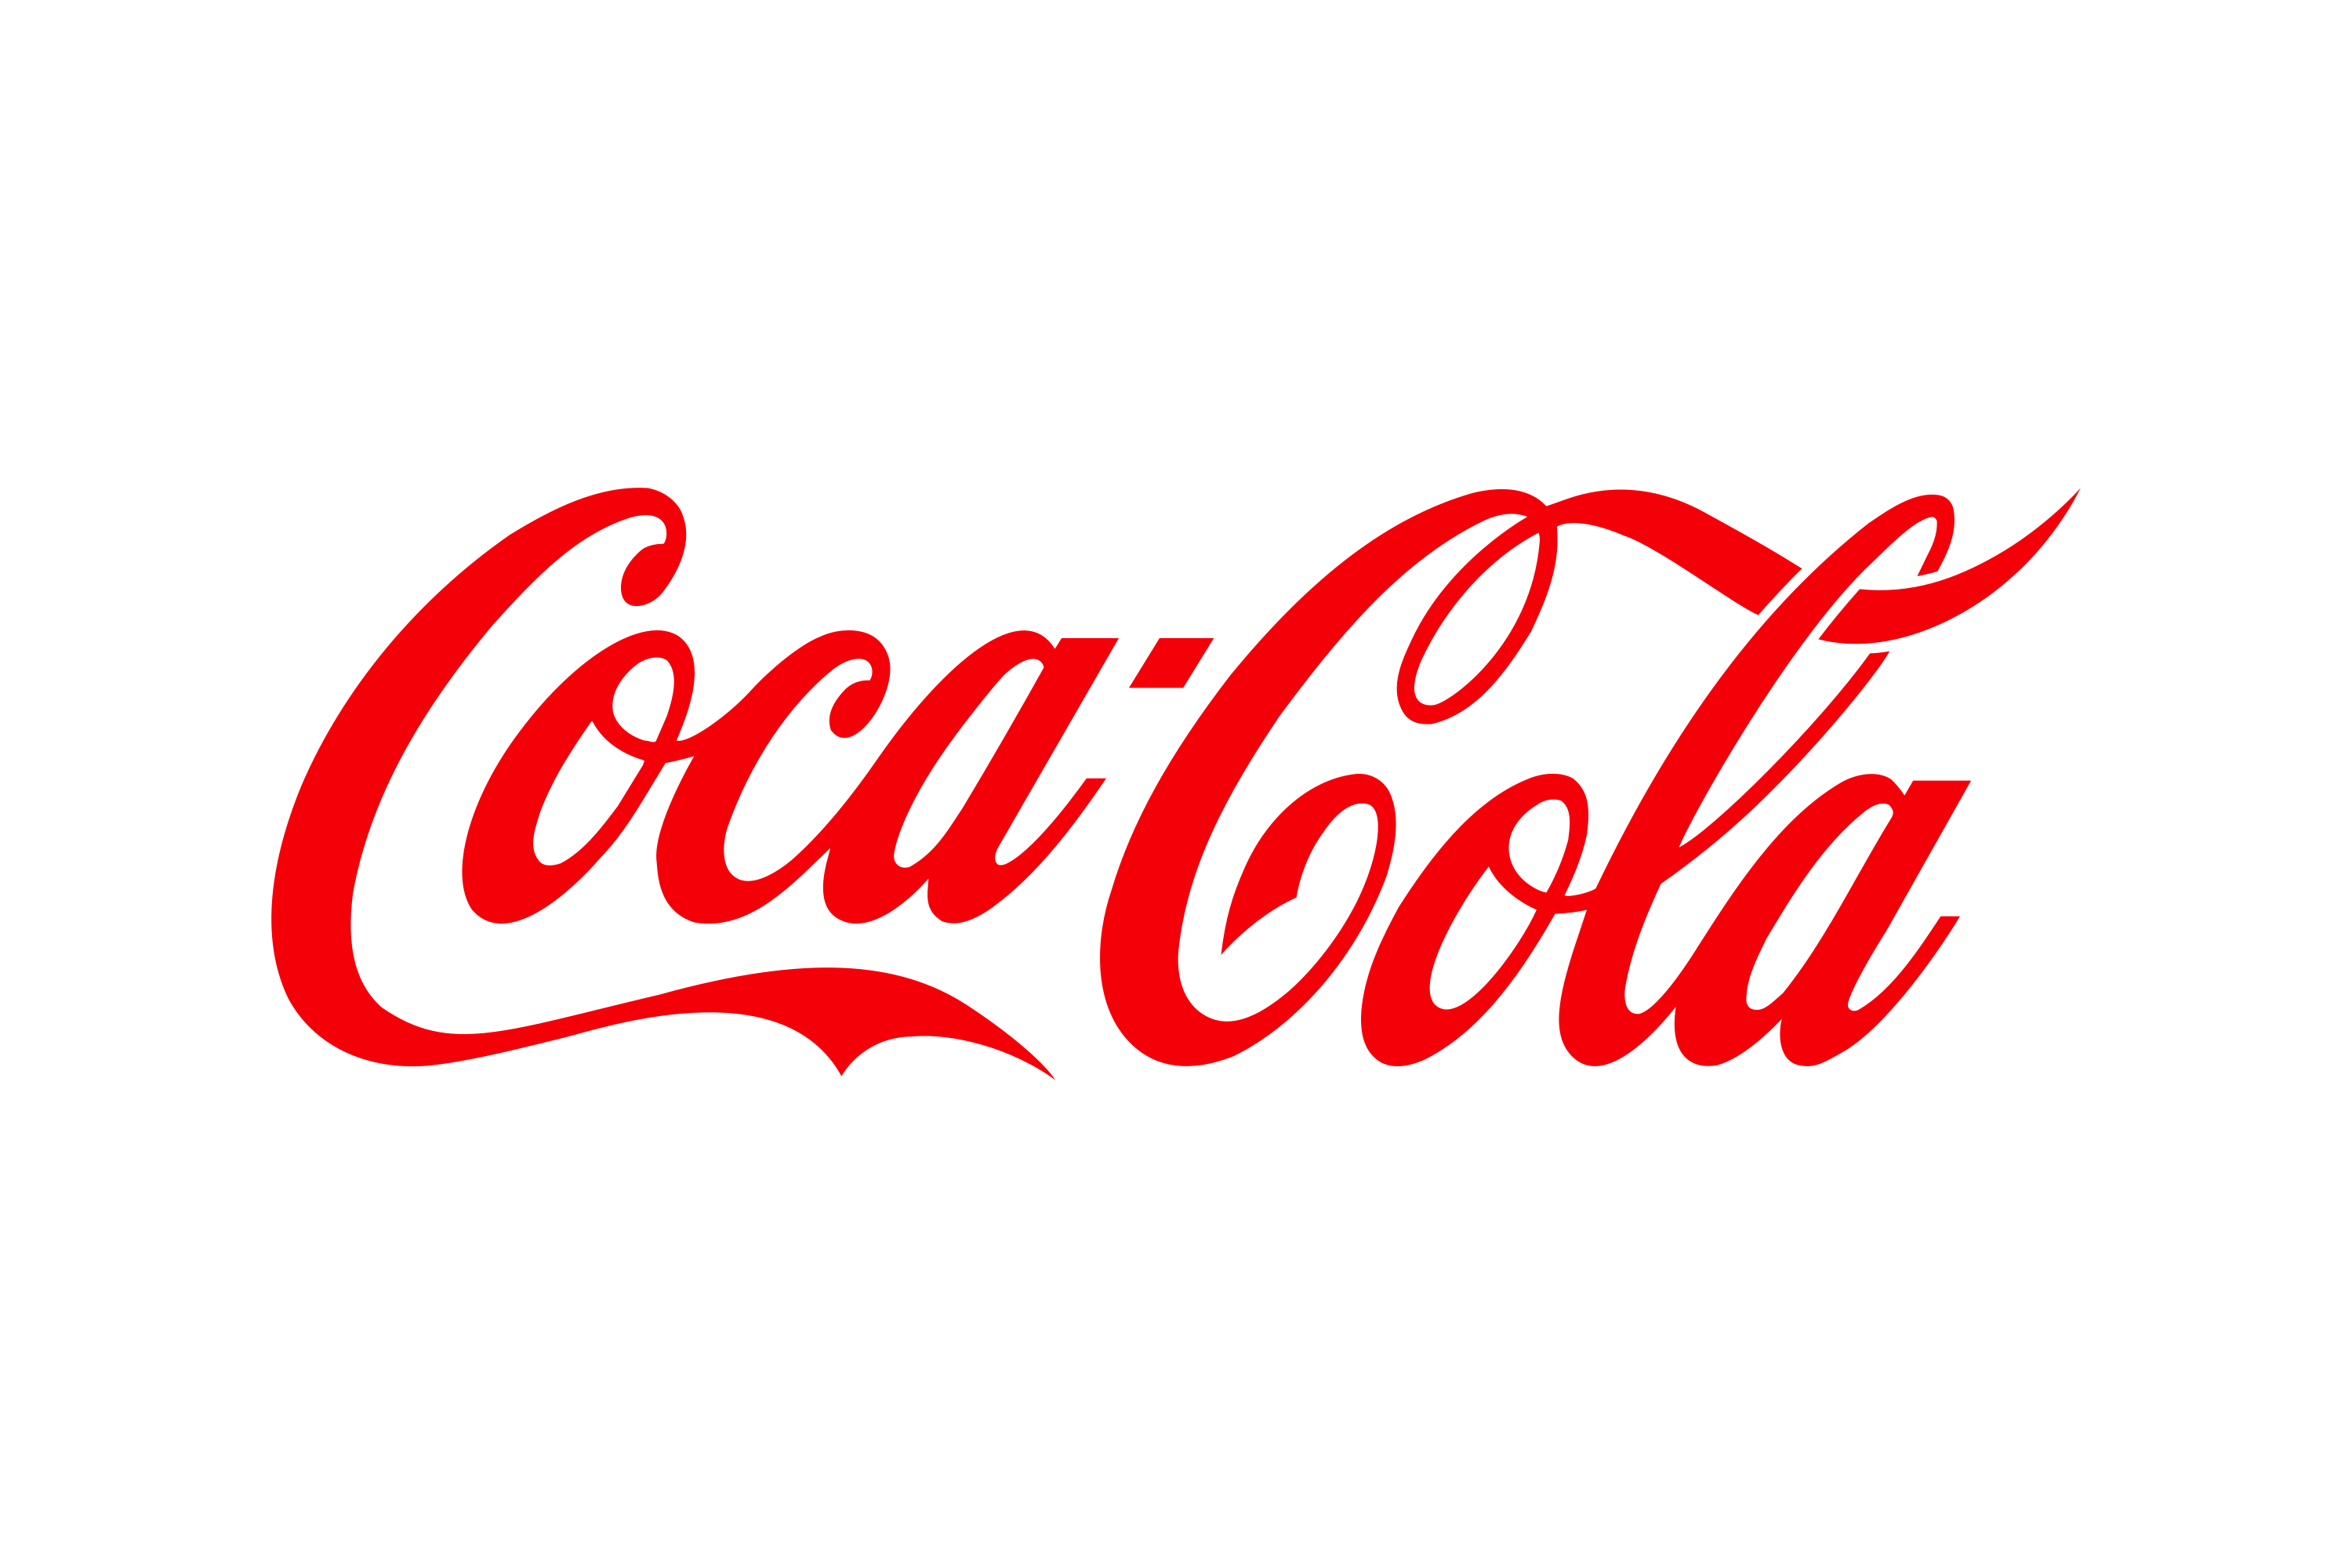 Coca-Cola logo png